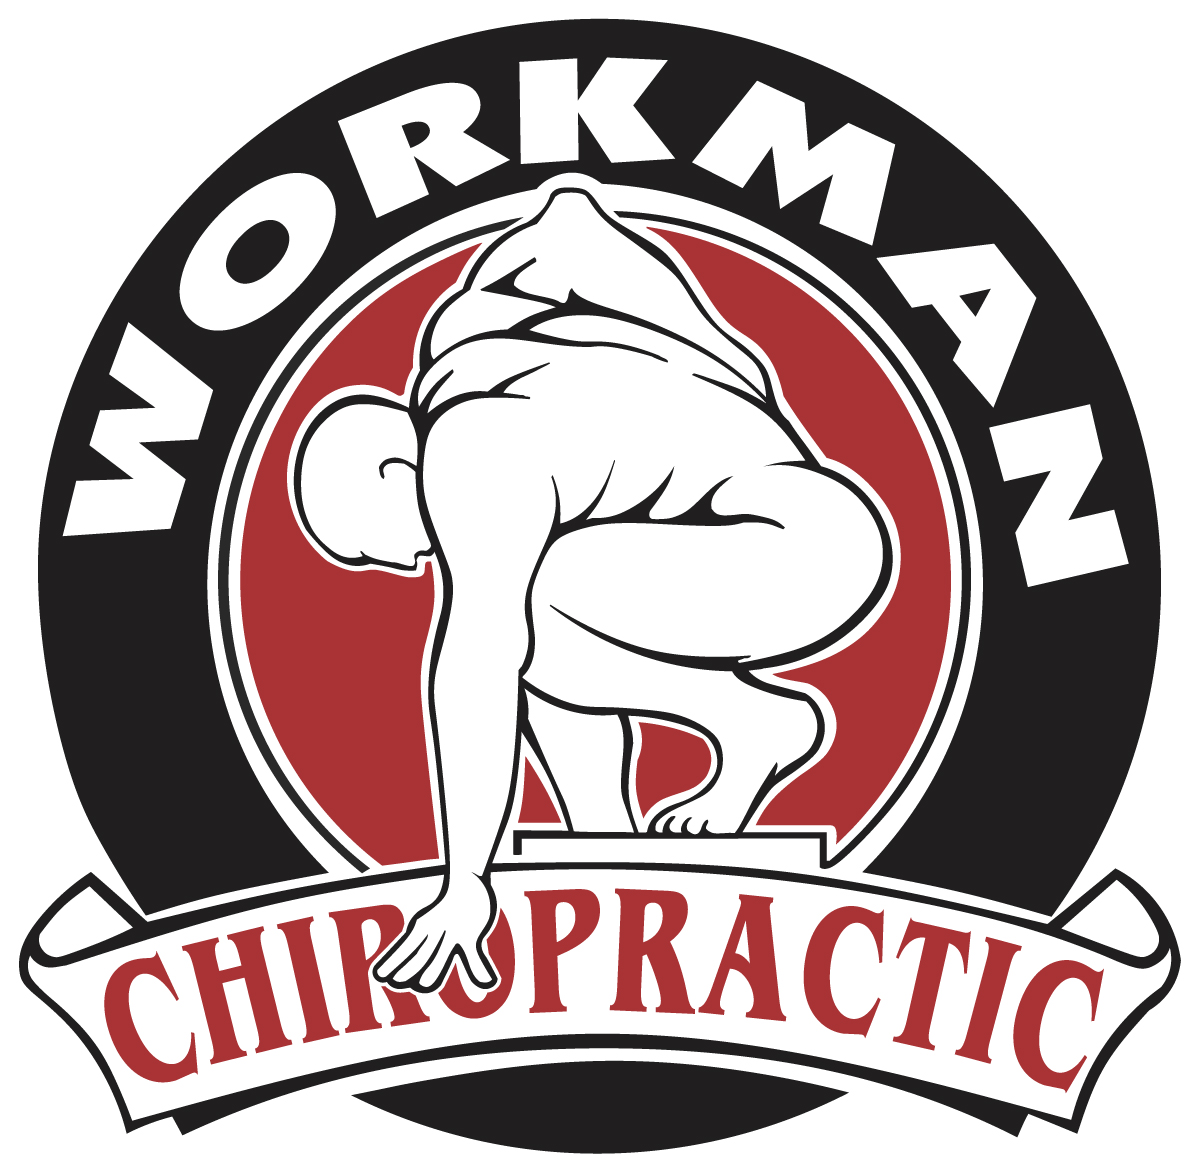 Workman Chiropractic